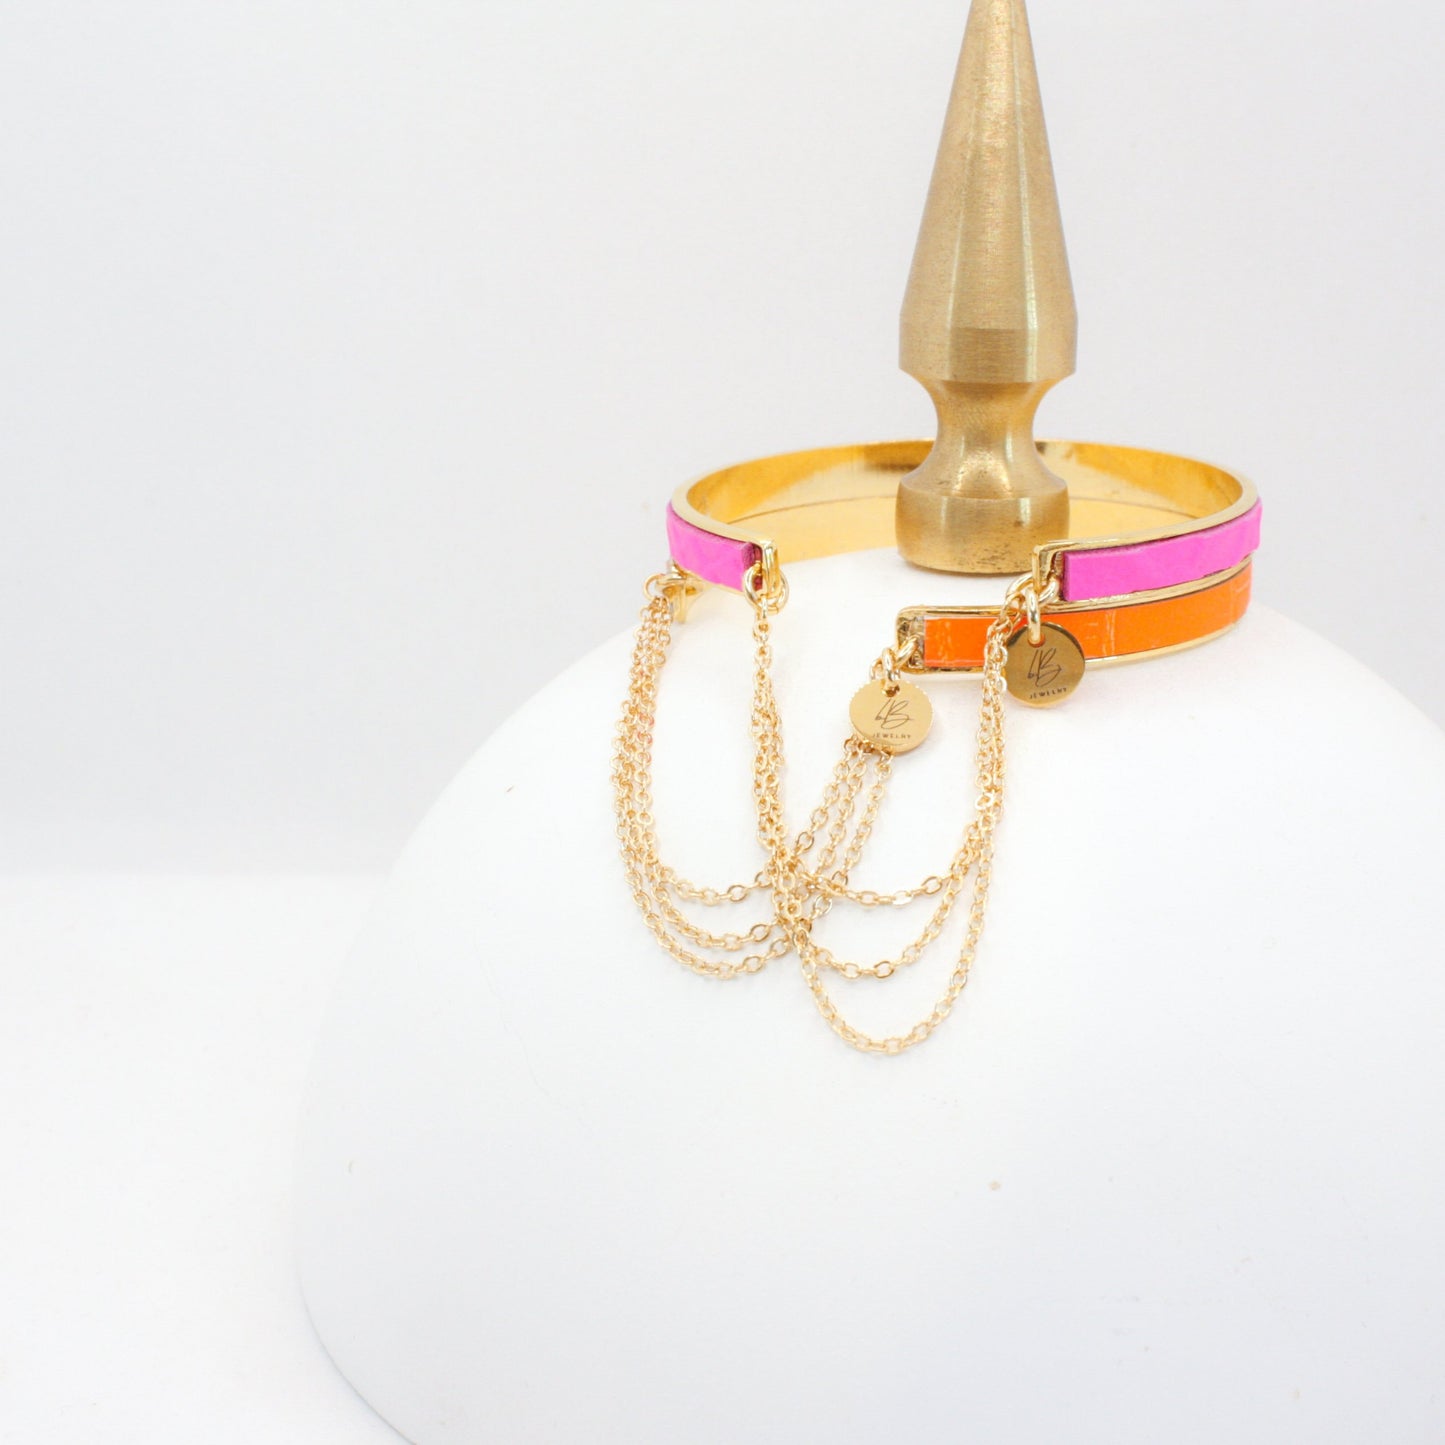 Bijoux Leather & Chain Cuff Bracelet : Neon Pink (1/4")